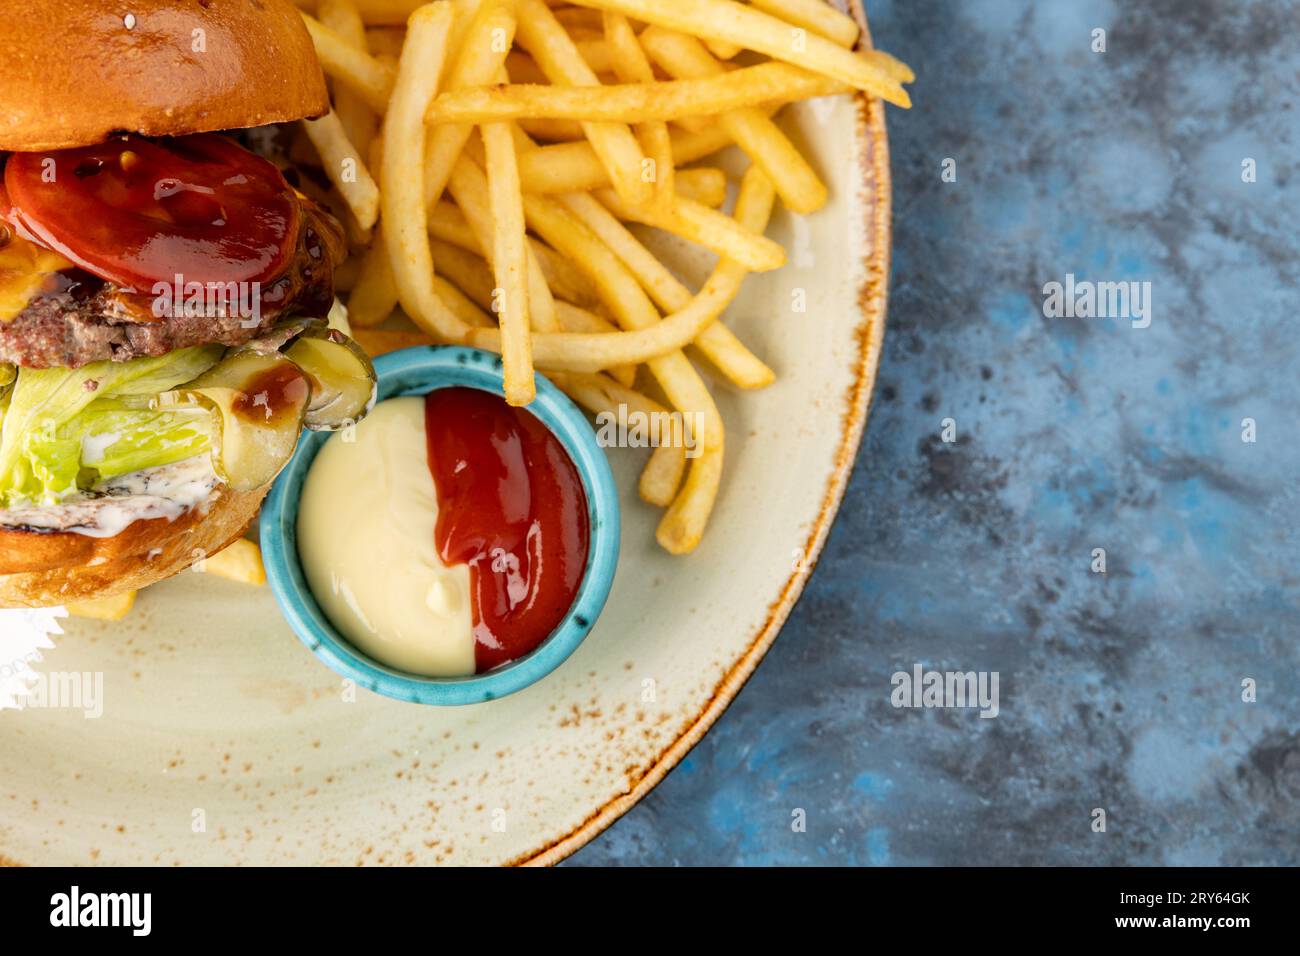 Burger de bœuf avec laitue et cornichons avec frites et sauce sur fond gris-bleu. Service de restauration Banque D'Images